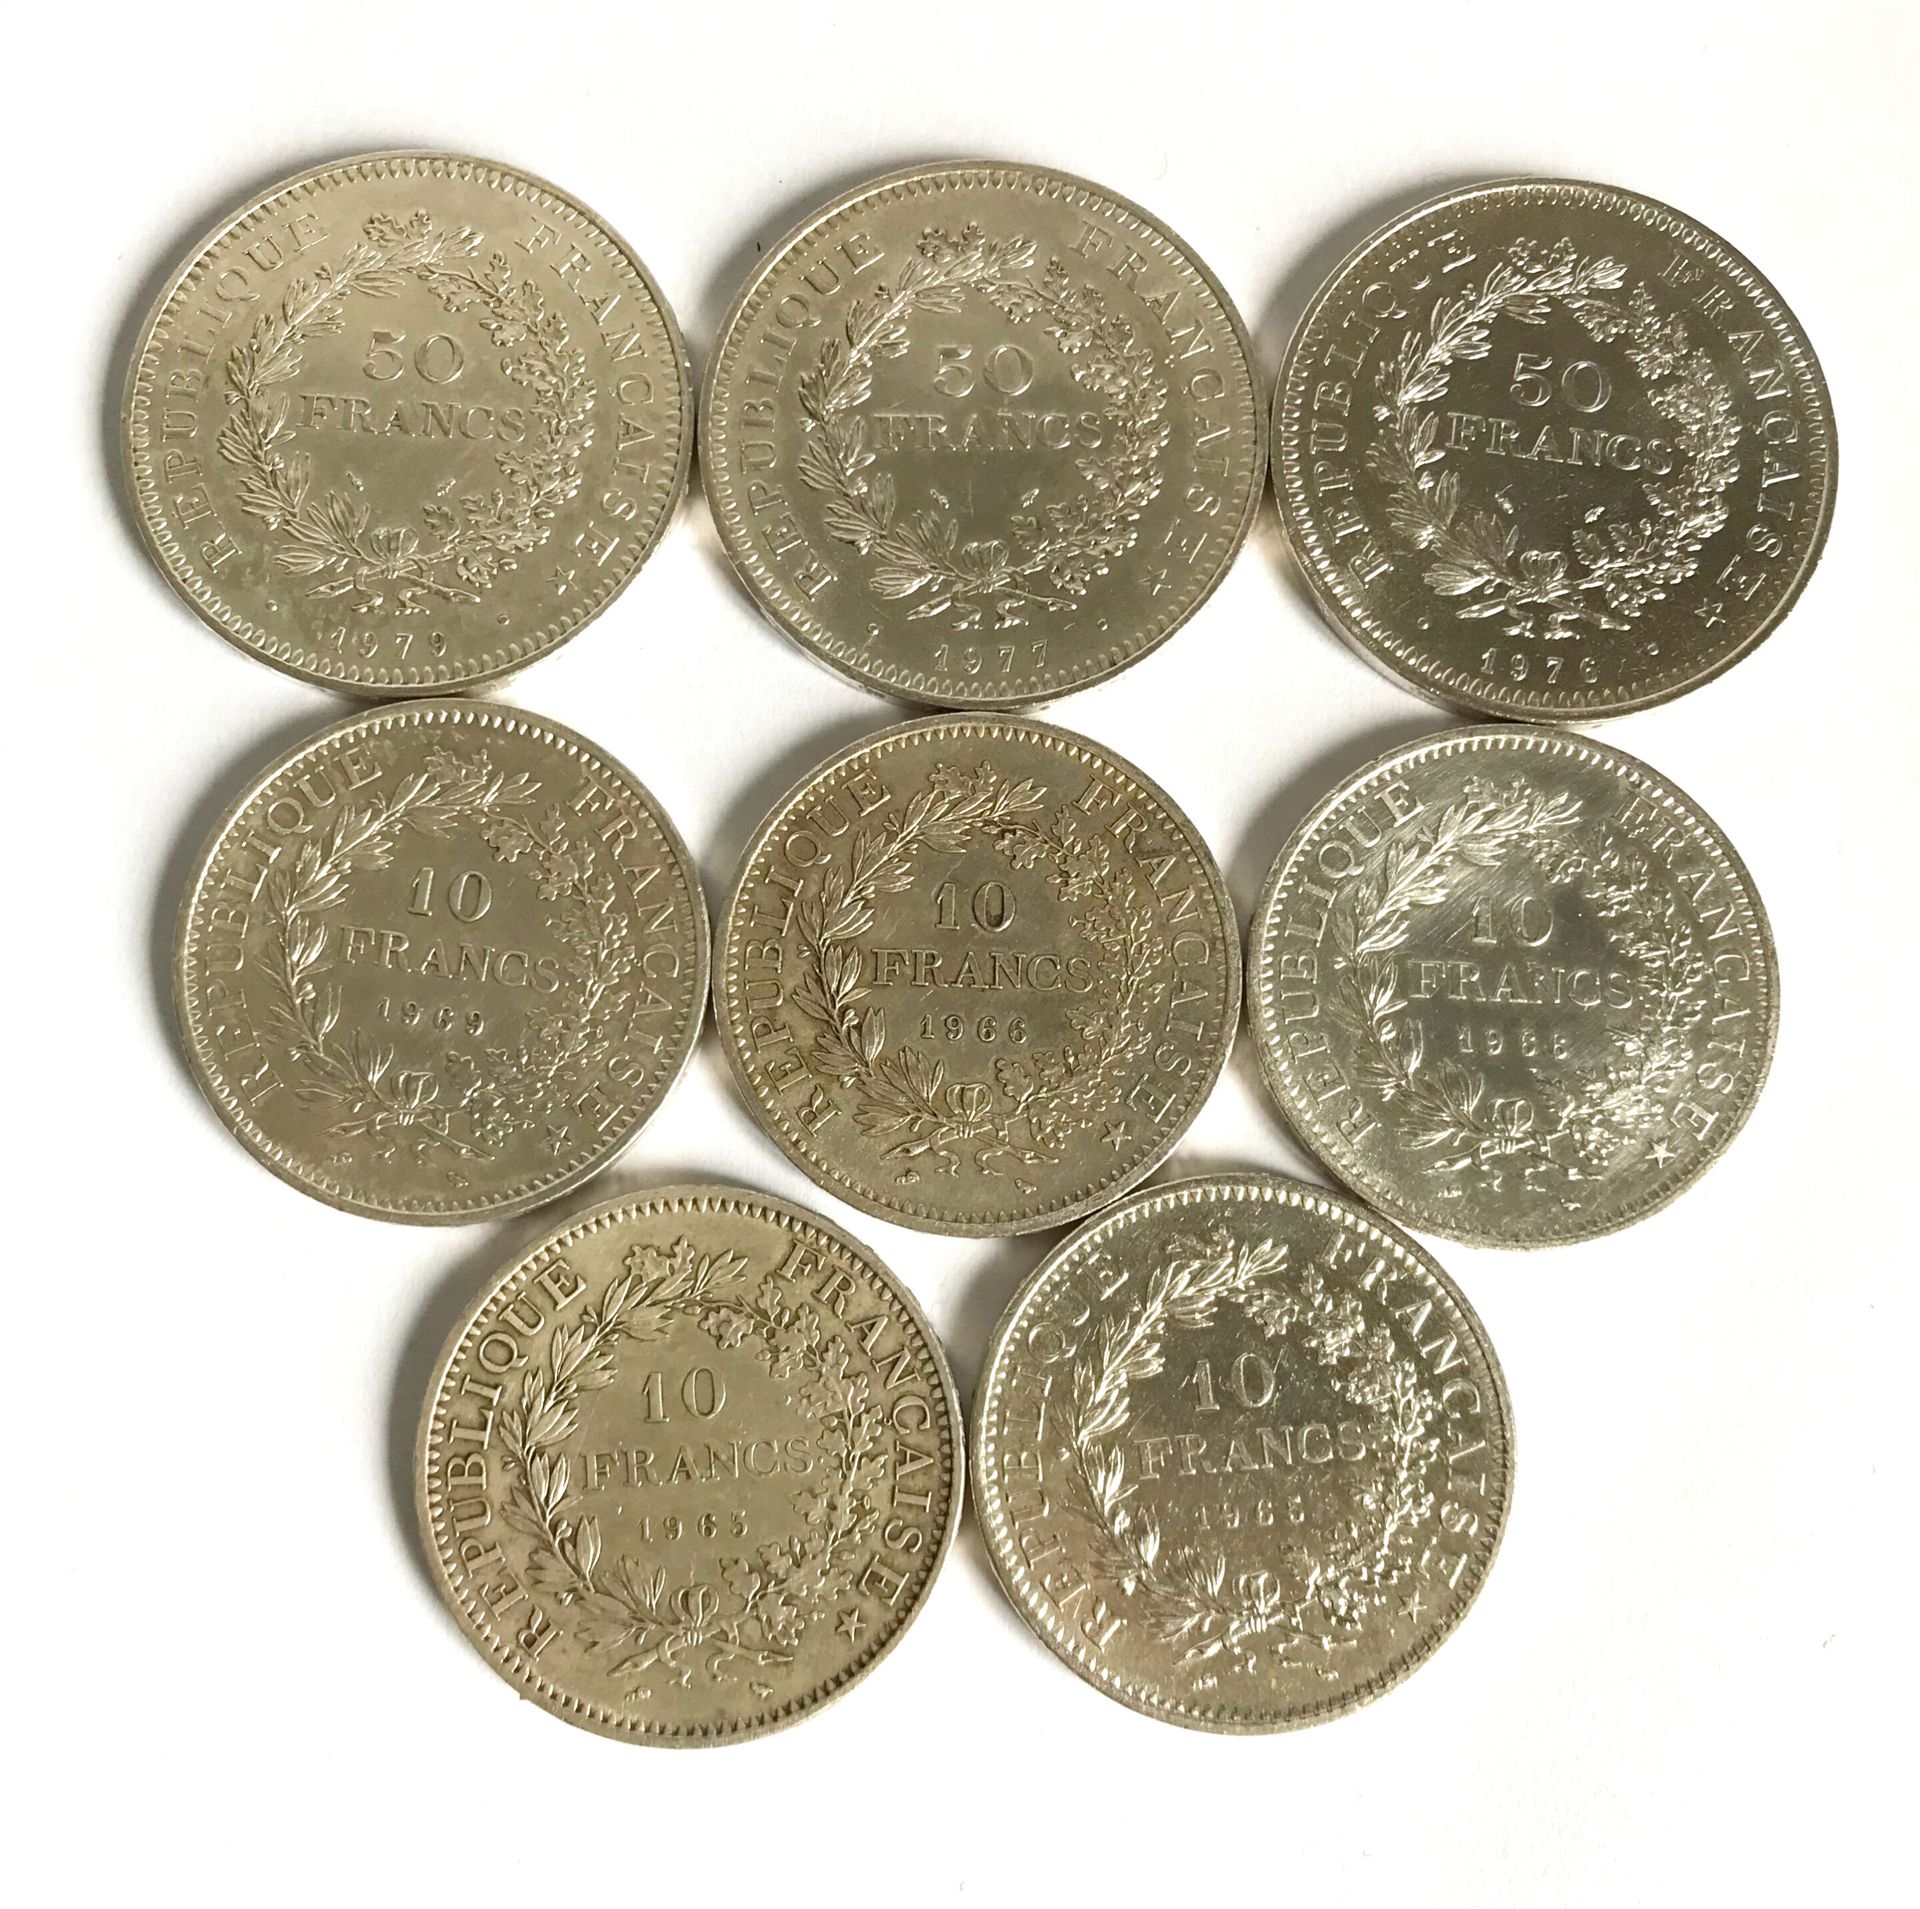 Null Set aus 5 Silbermünzen zu 10 Fcs und 3 Silbermünzen zu 50 Fcs.
Gewicht: 215&hellip;